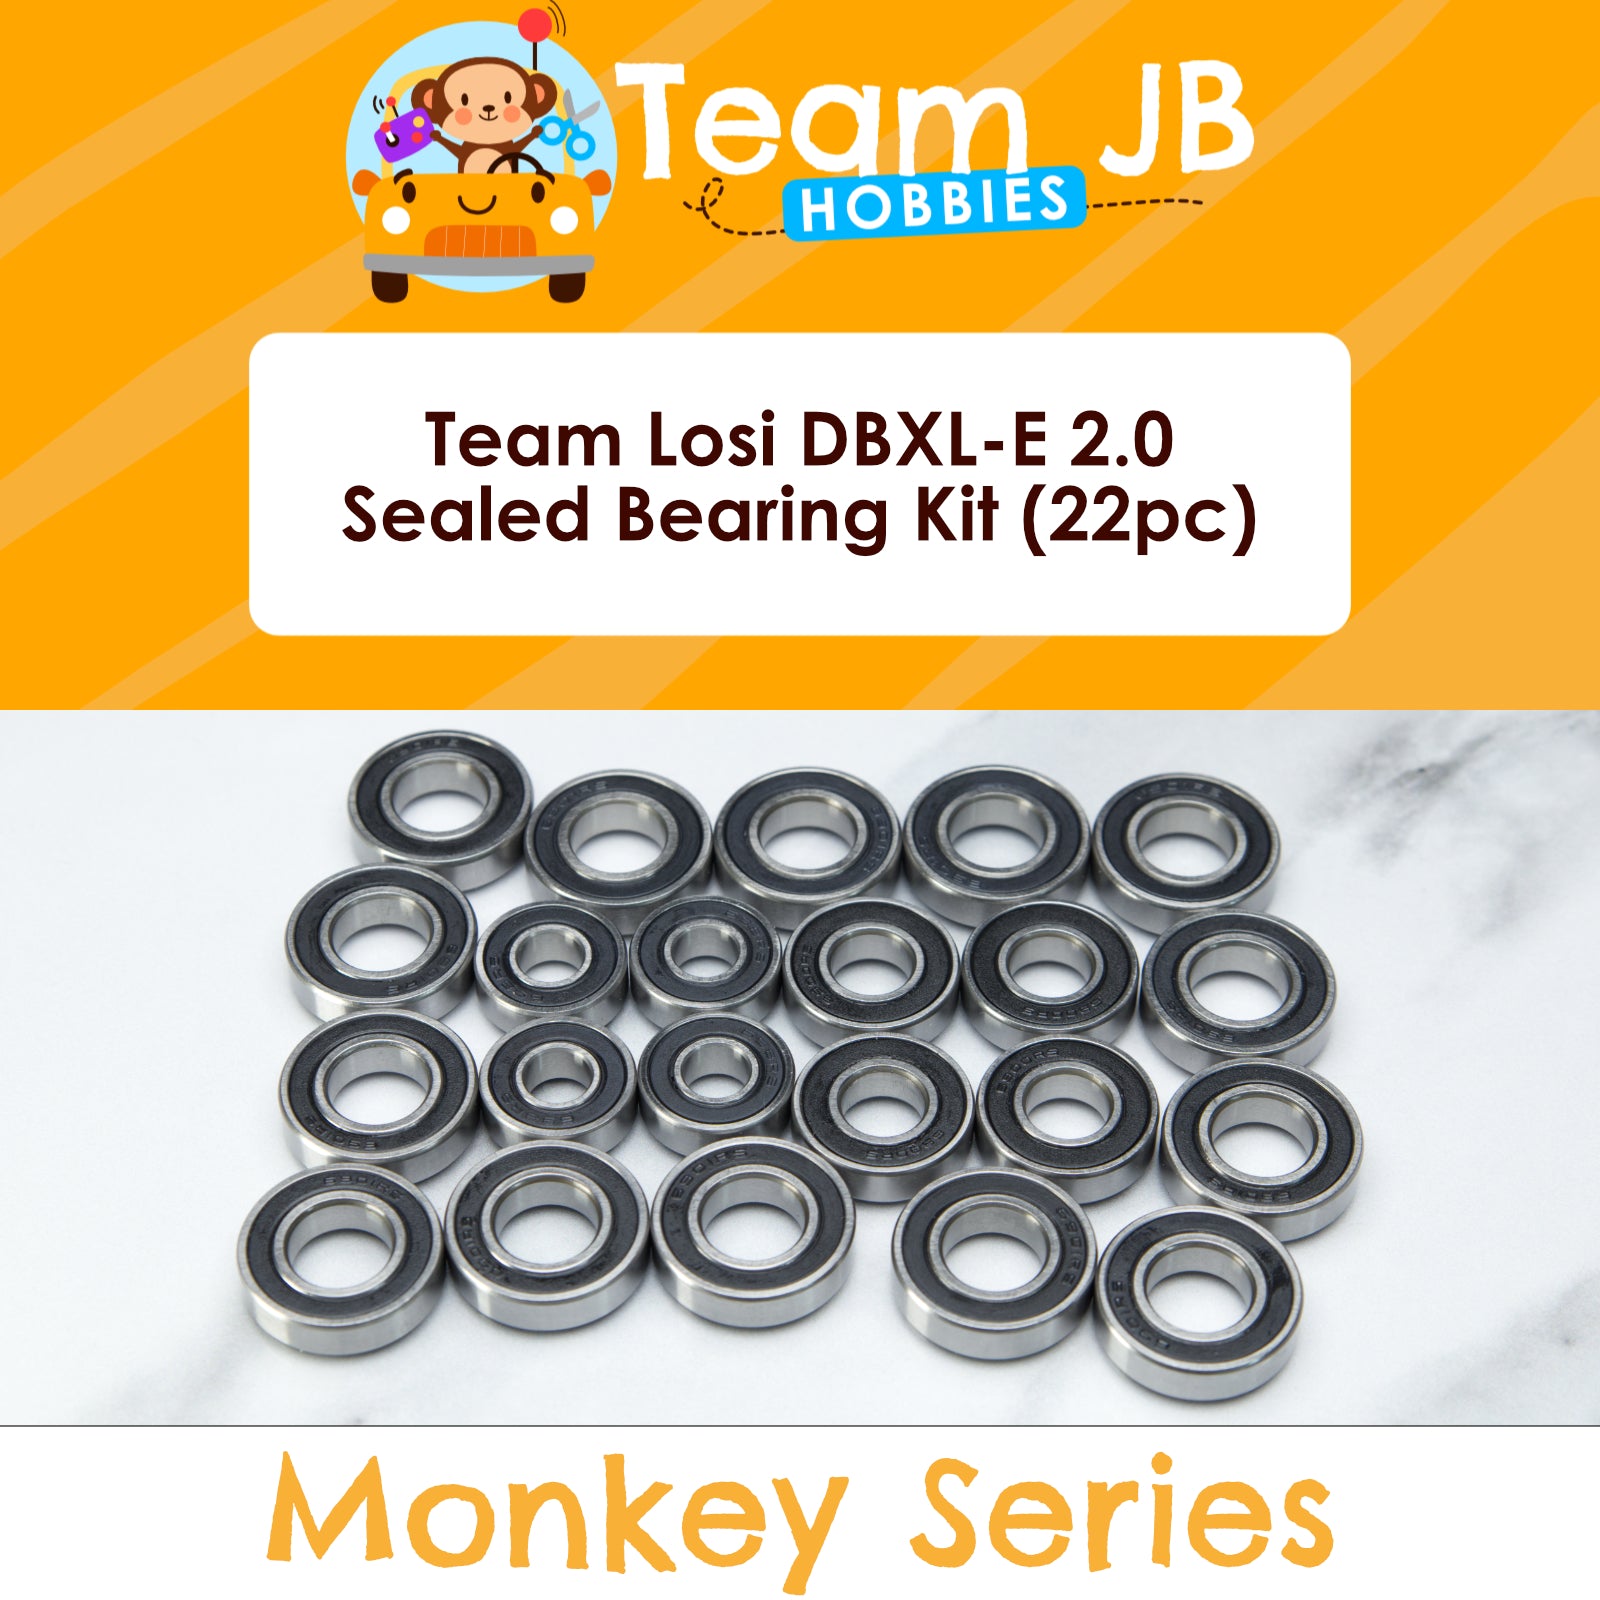 Team Losi DBXL-E 2.0 - Sealed Bearing Kit